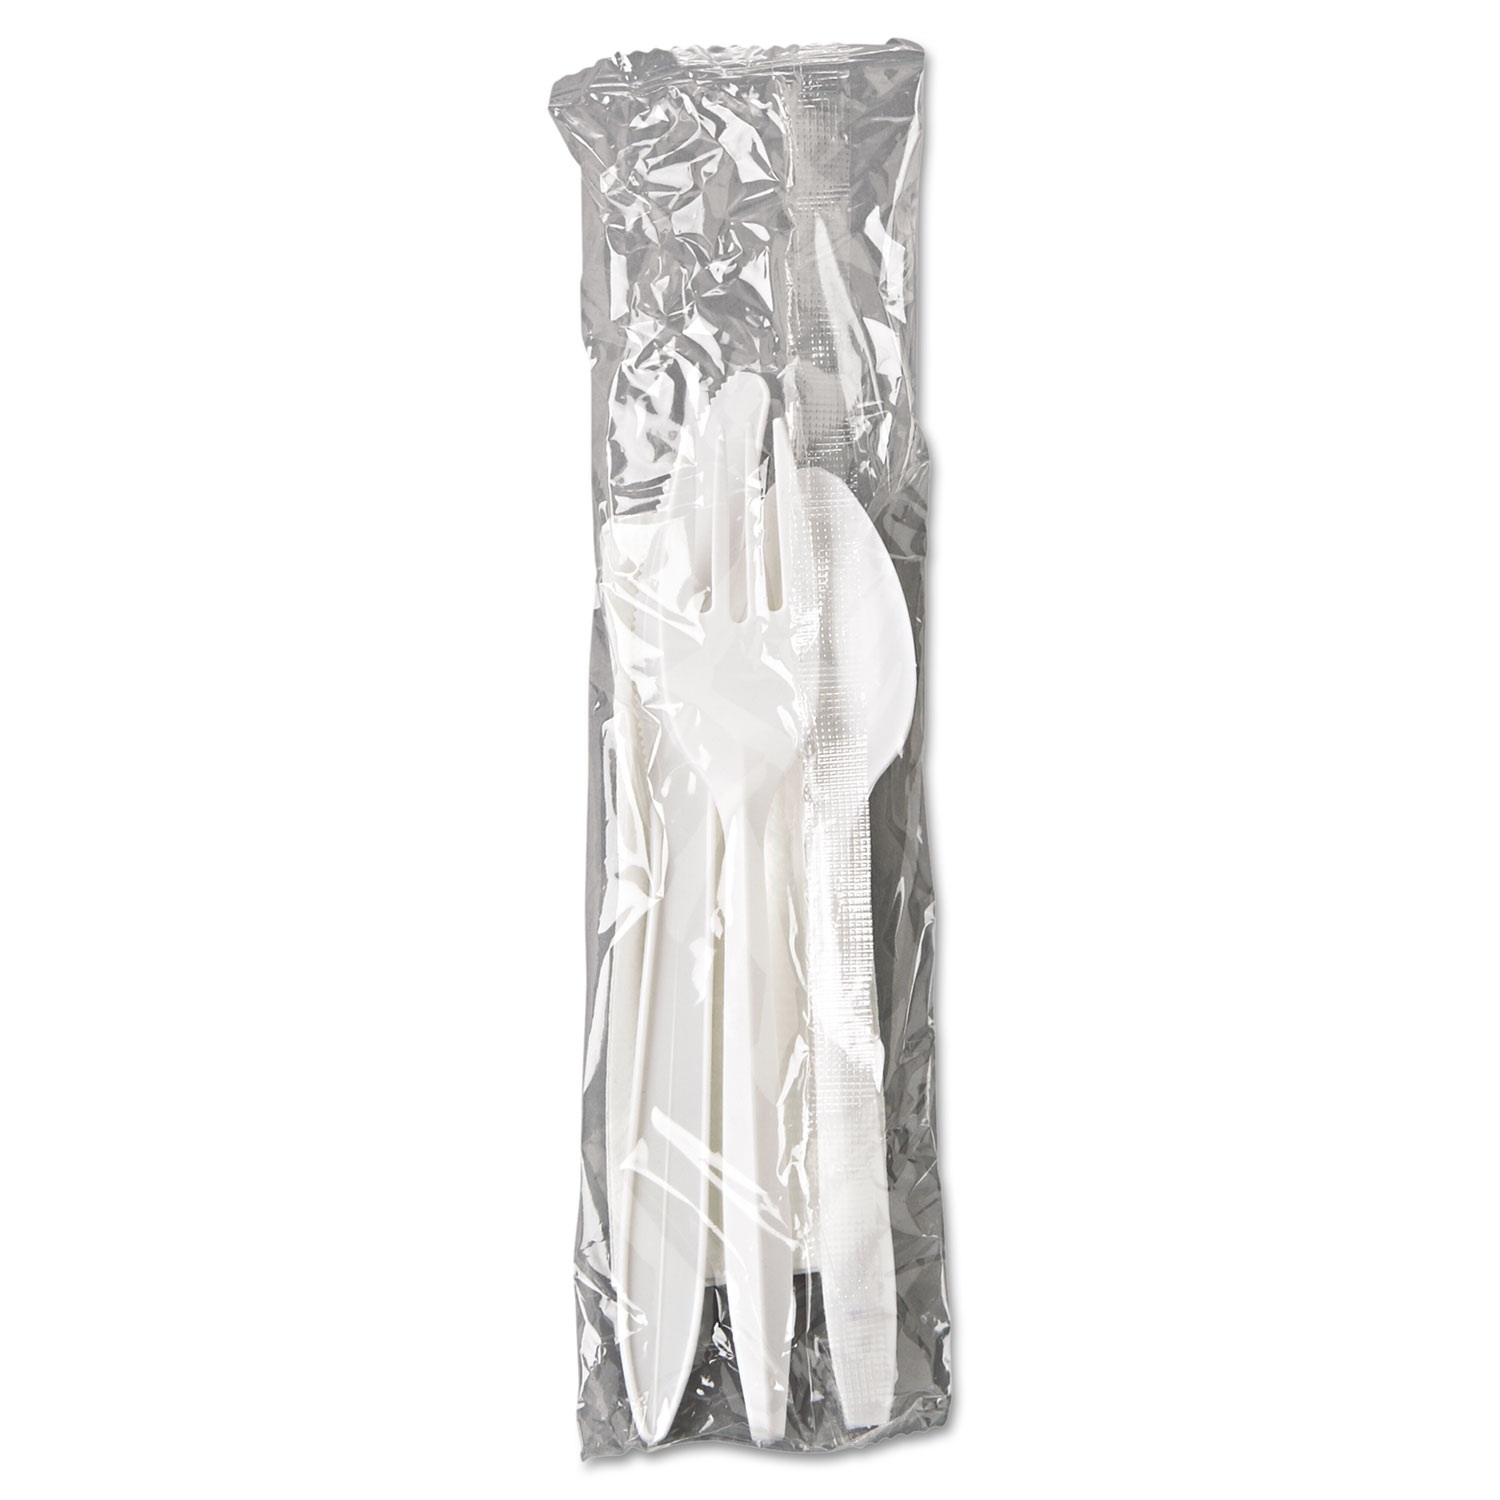 Wrapped Cutlery Kit, Fork/Knife/Spoon/Napkin, White, 250/Carton